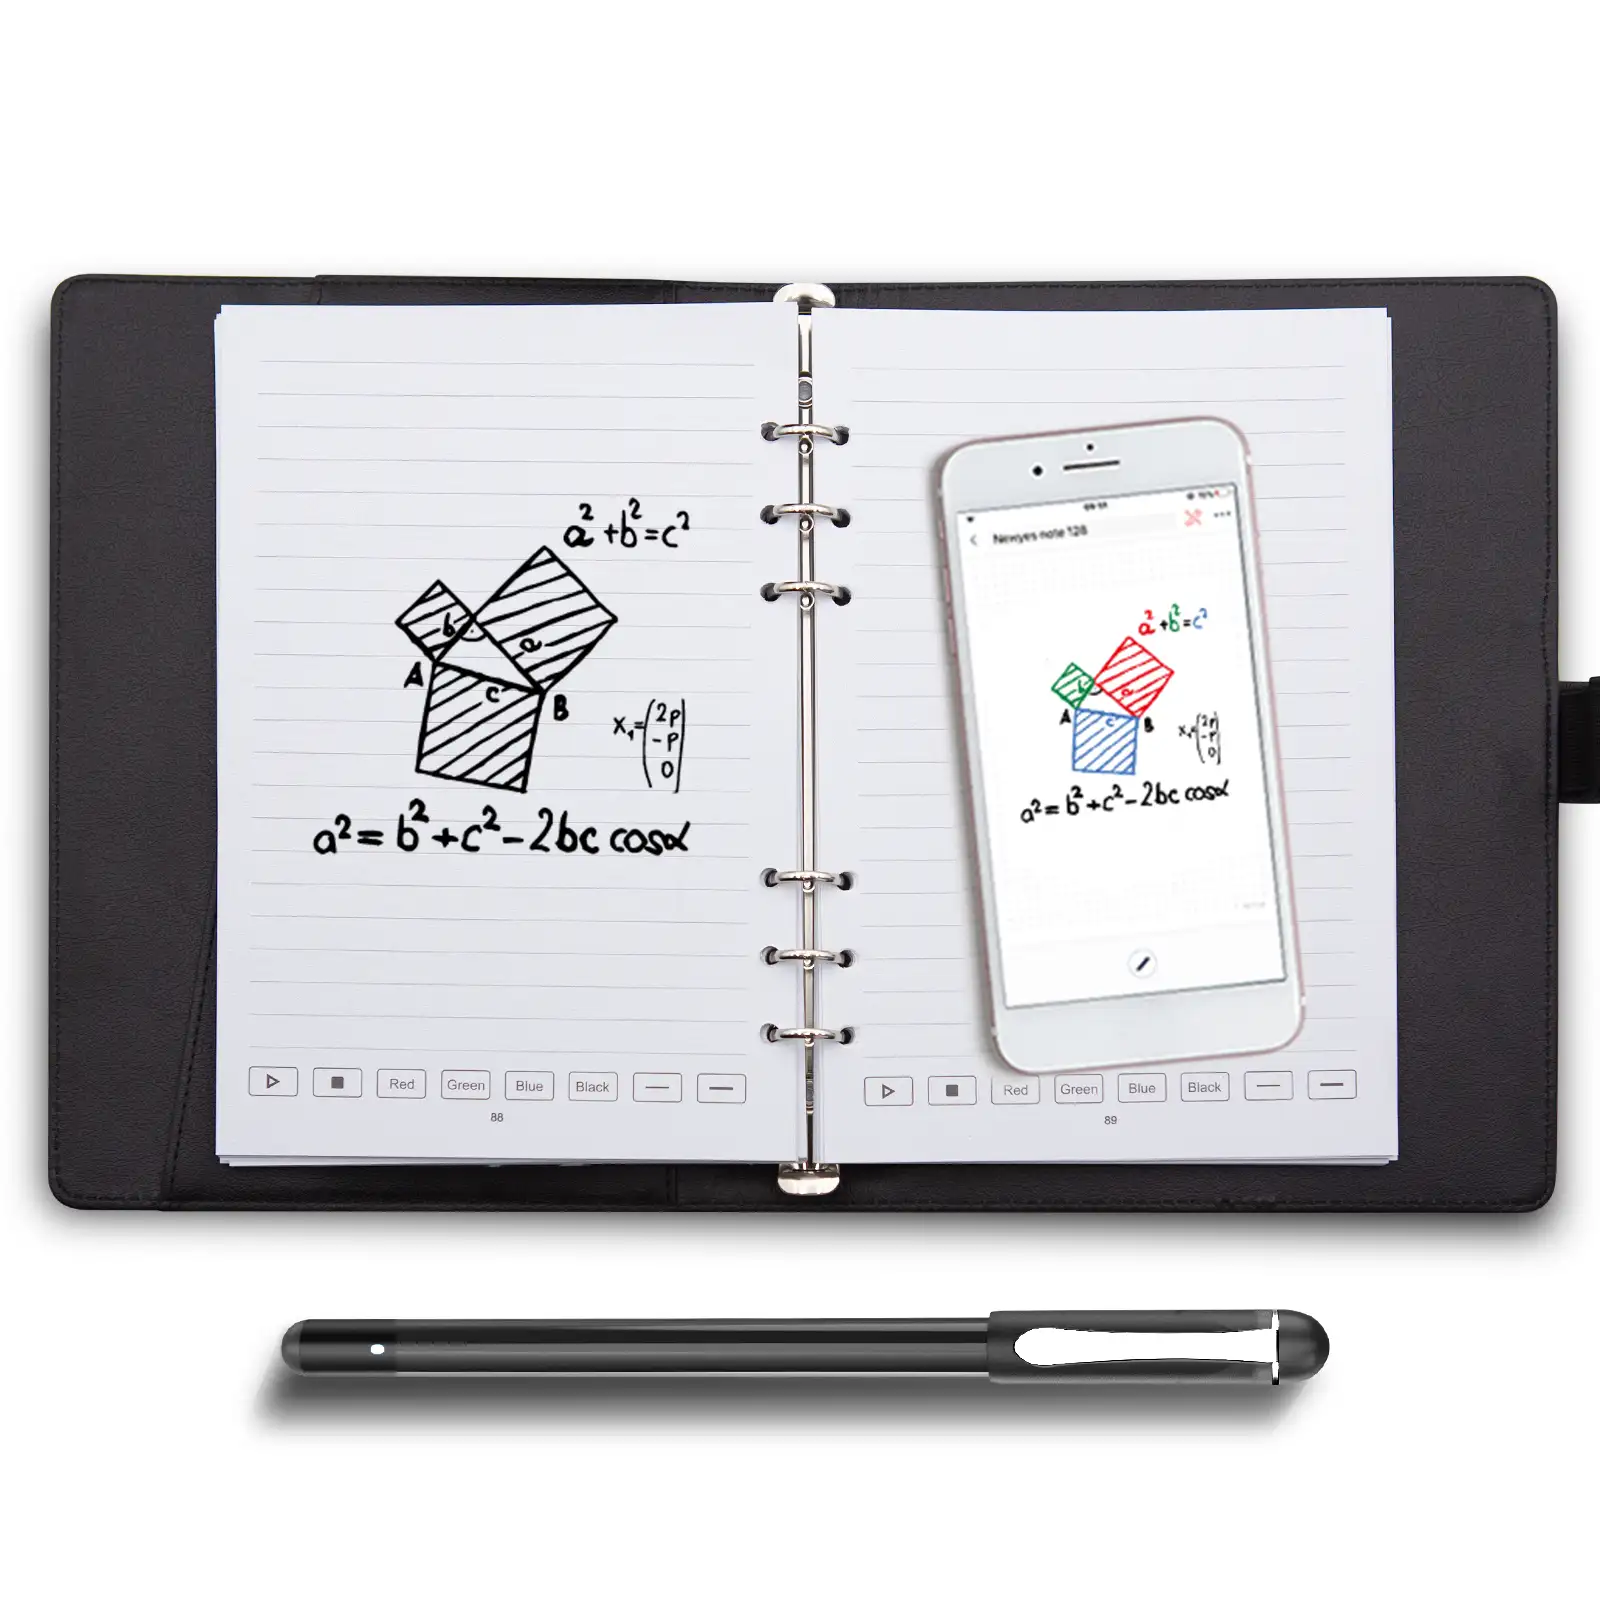 Newyes-Juego de escritura inteligente para libros de notas, bolígrafo inteligente con reconocimiento de escritura a mano y cuaderno